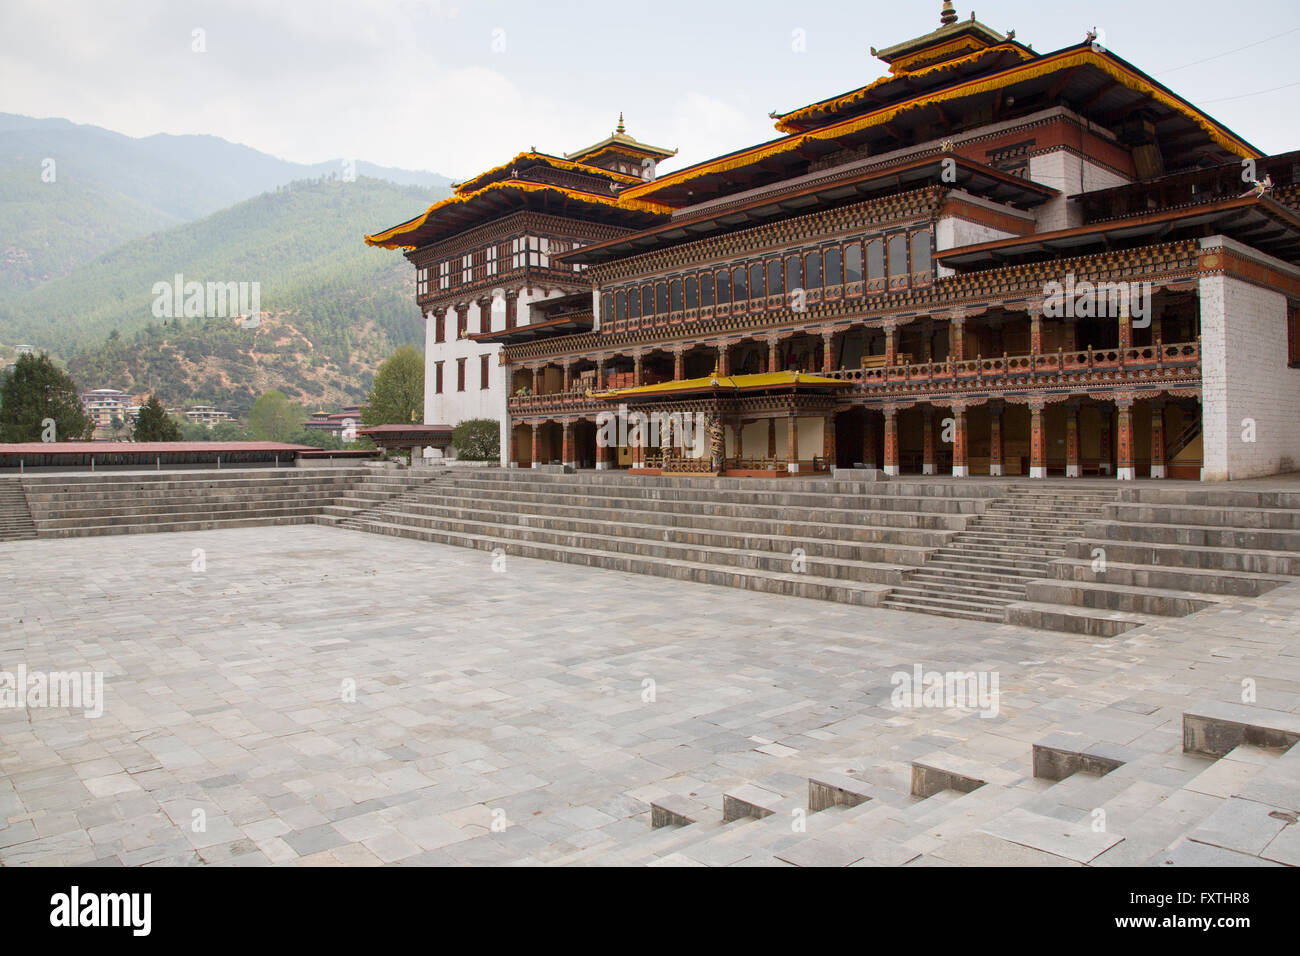 Tashichhoedzong aussi épelé ཆོས་རྫོང joueur de est un monastère bouddhiste et forteresse sur le bord nord de la ville de Thimphu au Bhoutan Banque D'Images